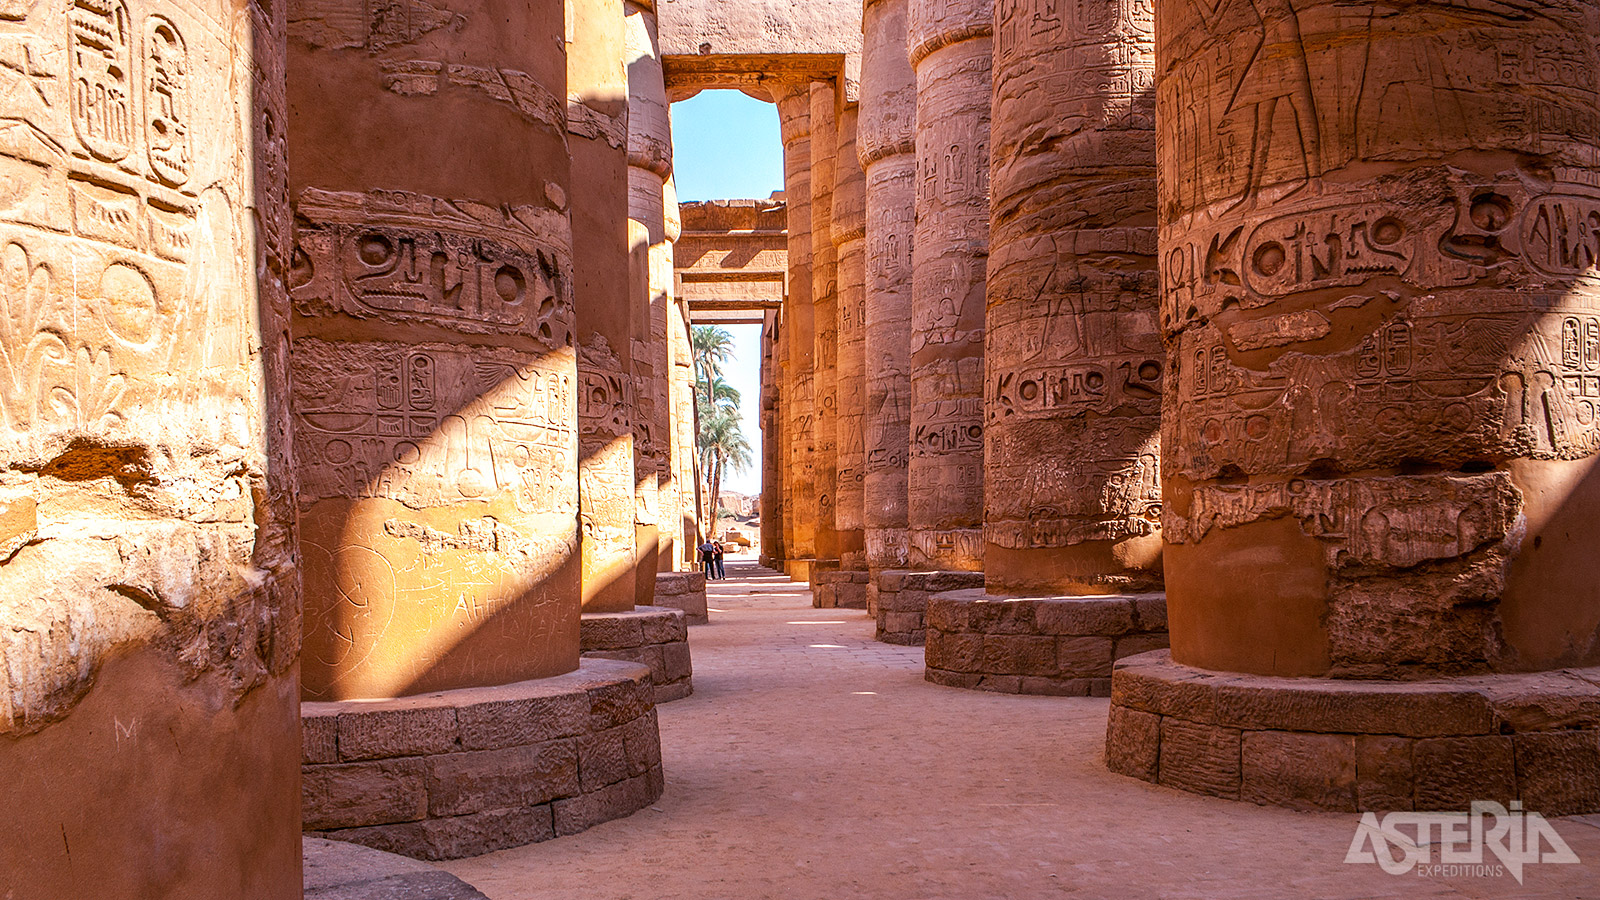 De grote zuilenzaal of hypostyle zaal is één van de meest indrukwekkende delen van Karnak met een oppervlakte van 53 x 103 m